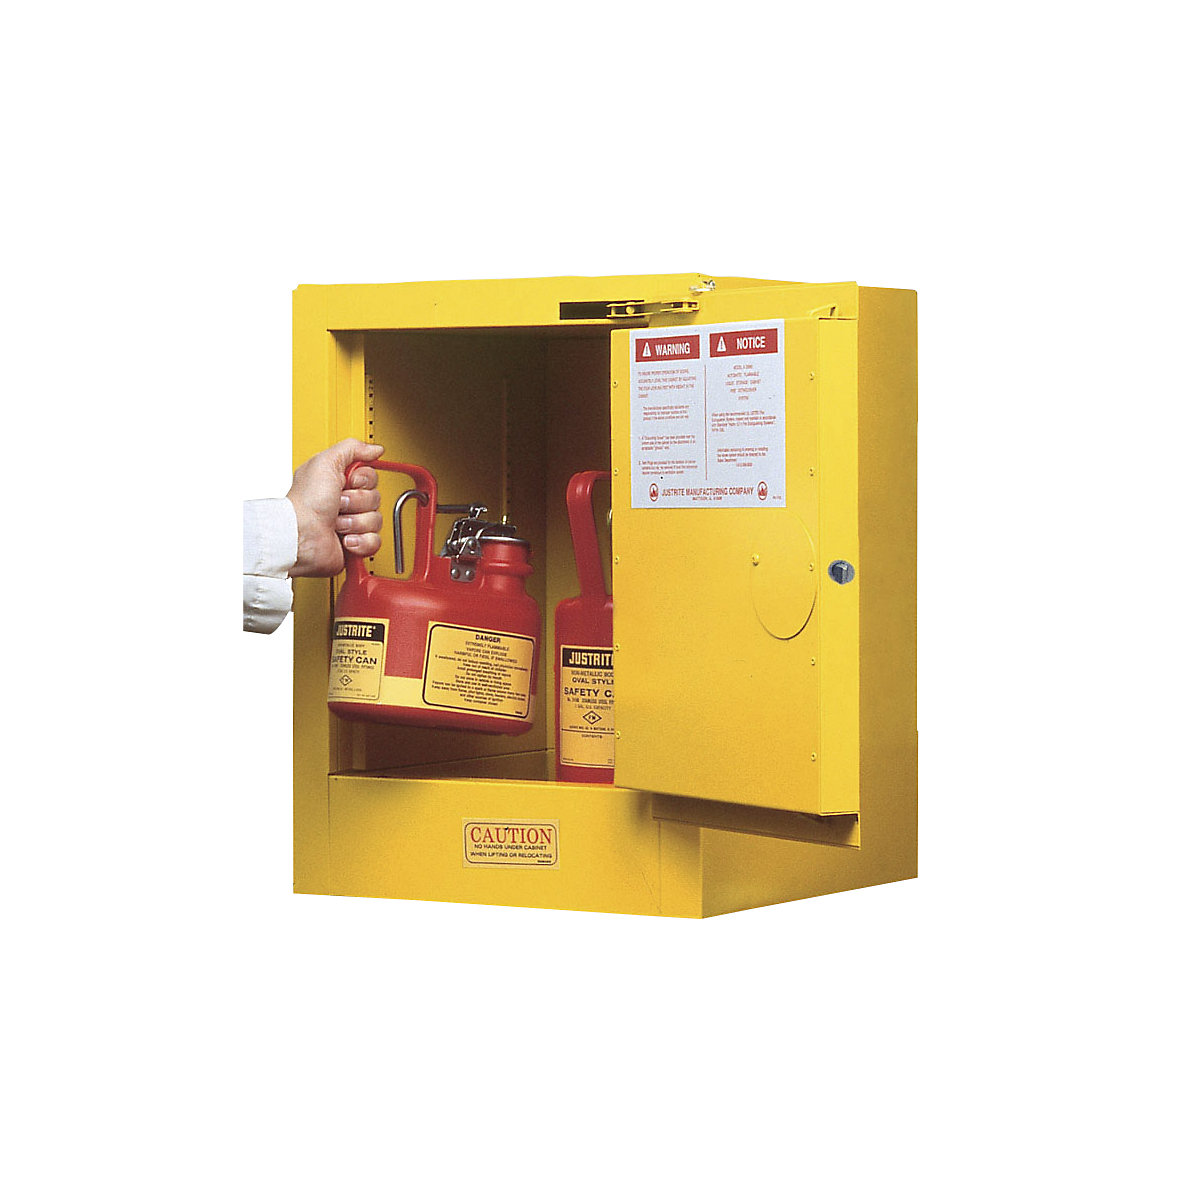 Petite armoire de sécurité FM – Justrite, armoire à poser, une porte, fermeture automatique, jaune